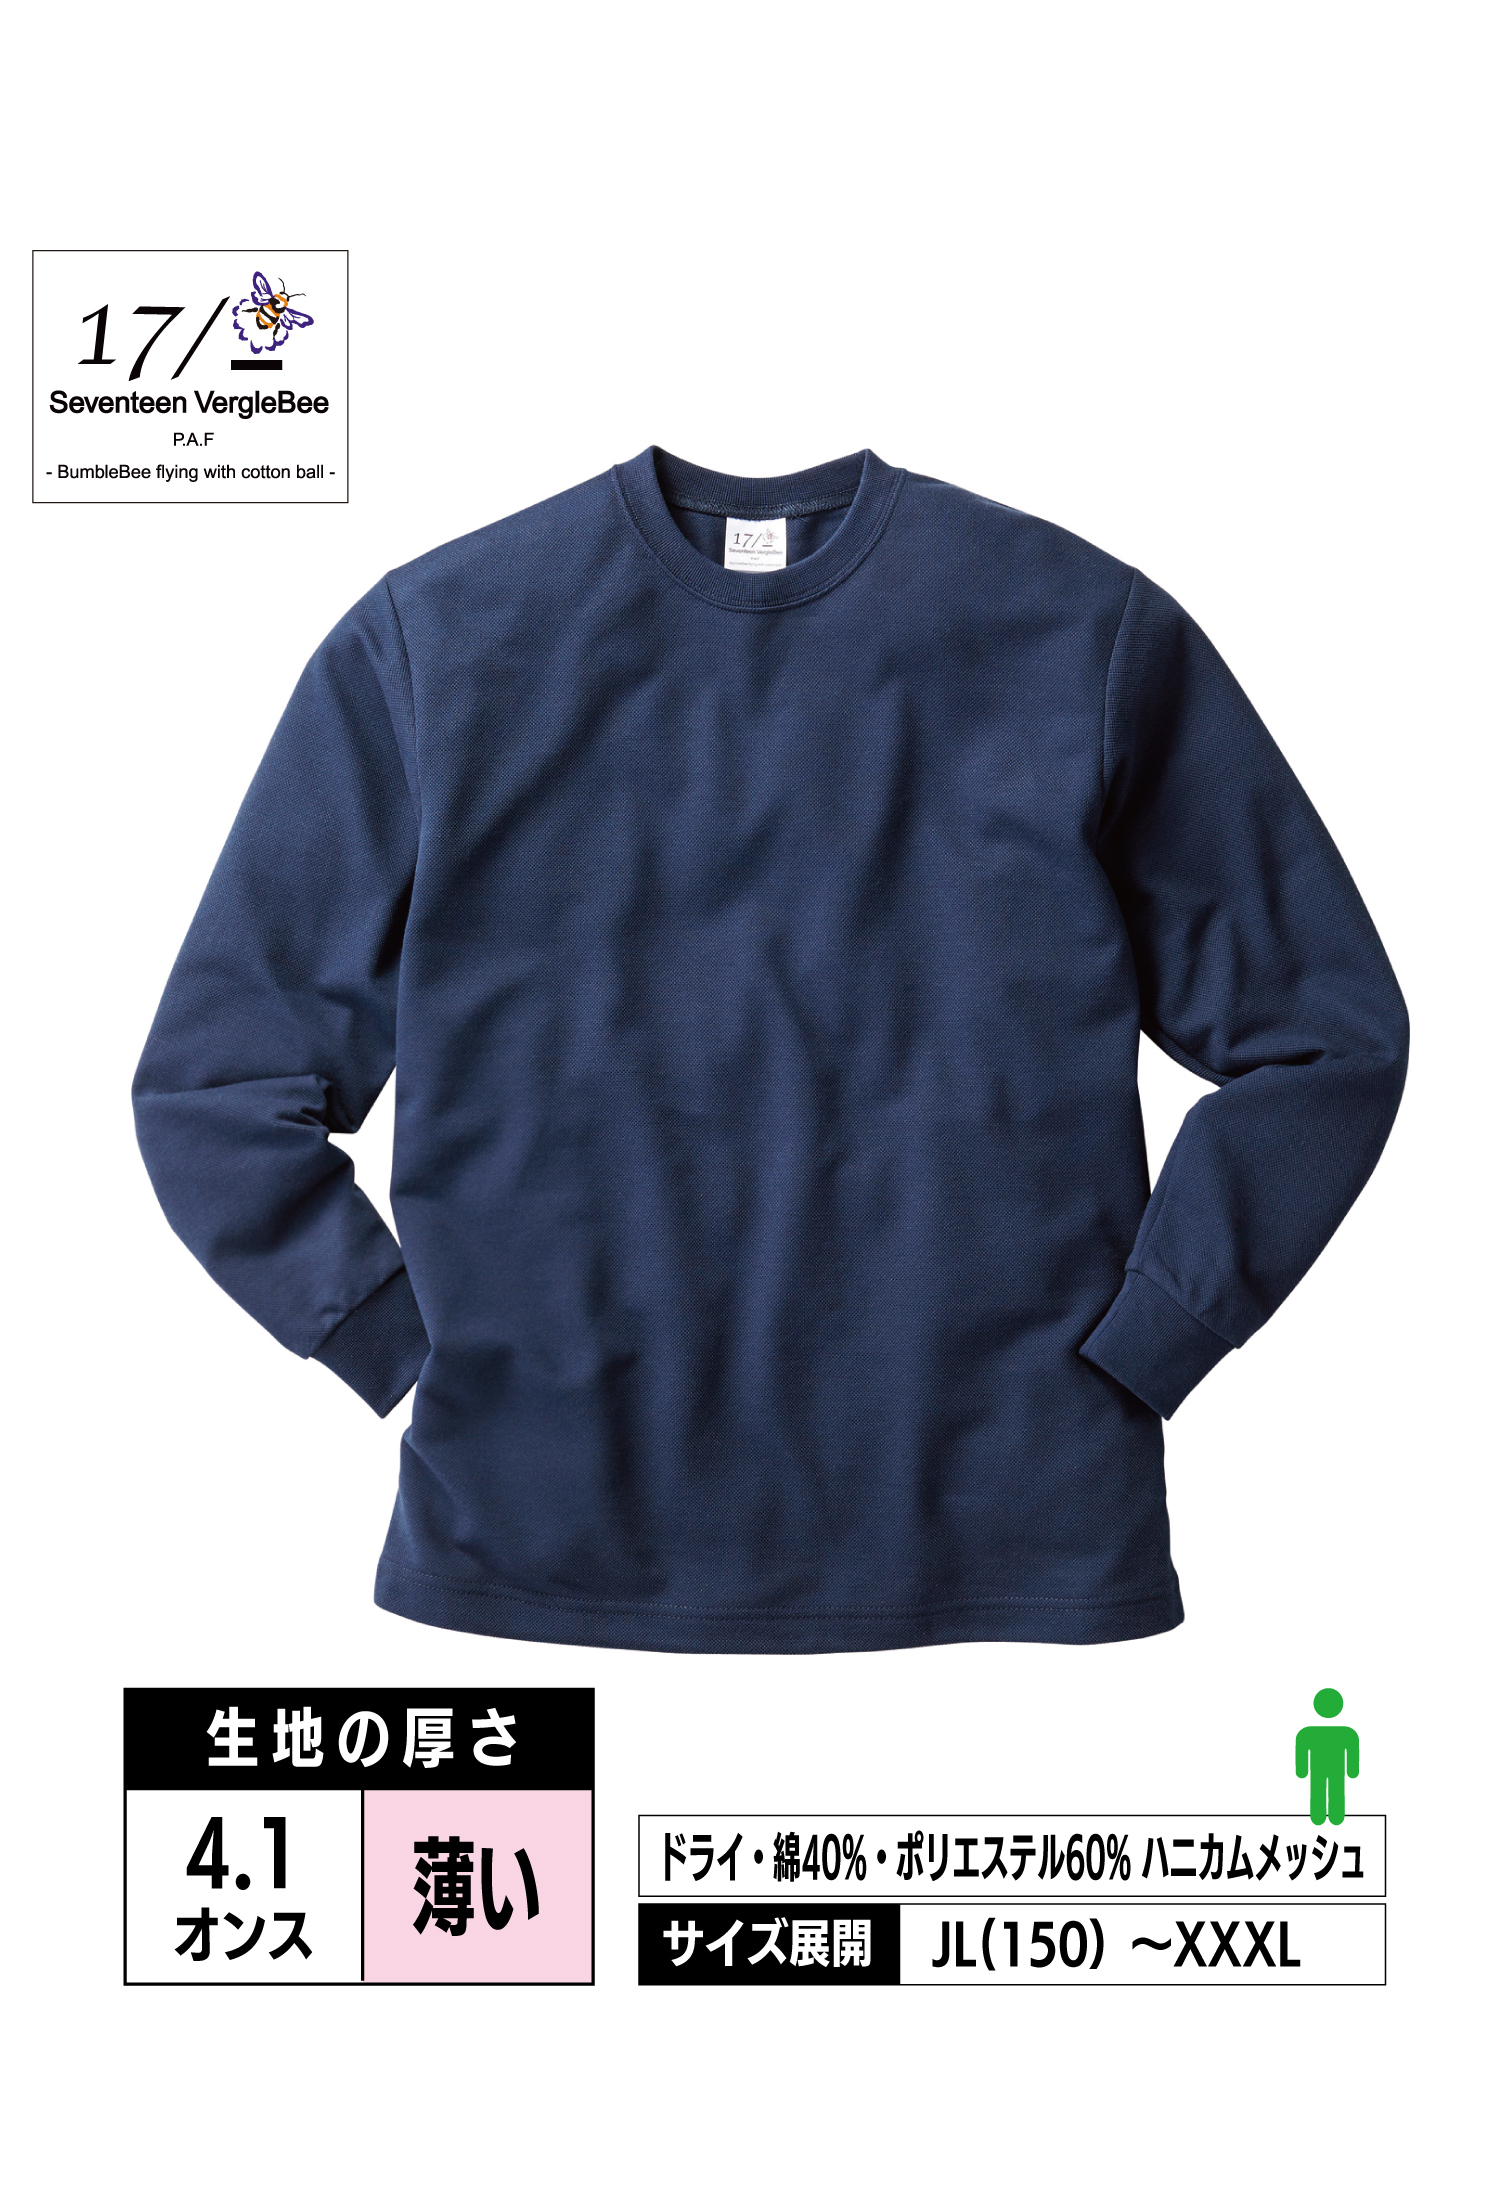 HNC-204｜ハニカム 長袖Tシャツ（リブ有り）【全3色】Seventeen VergleBee